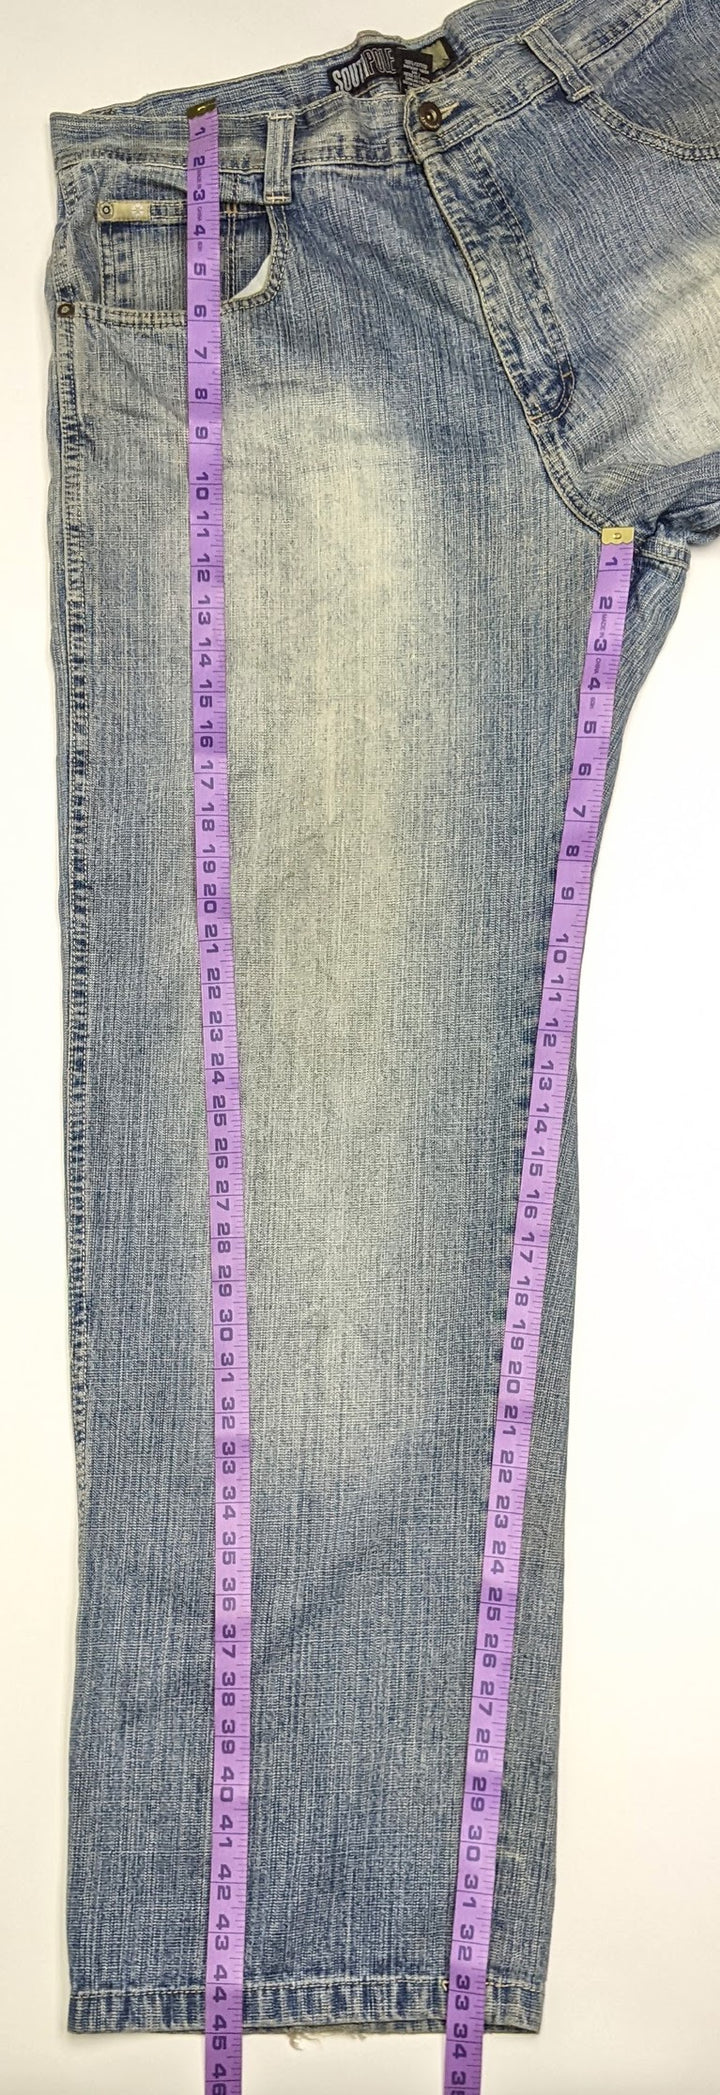 South Pole Denim Jeans 1 pc 1 lb B0202200 - Raghouse